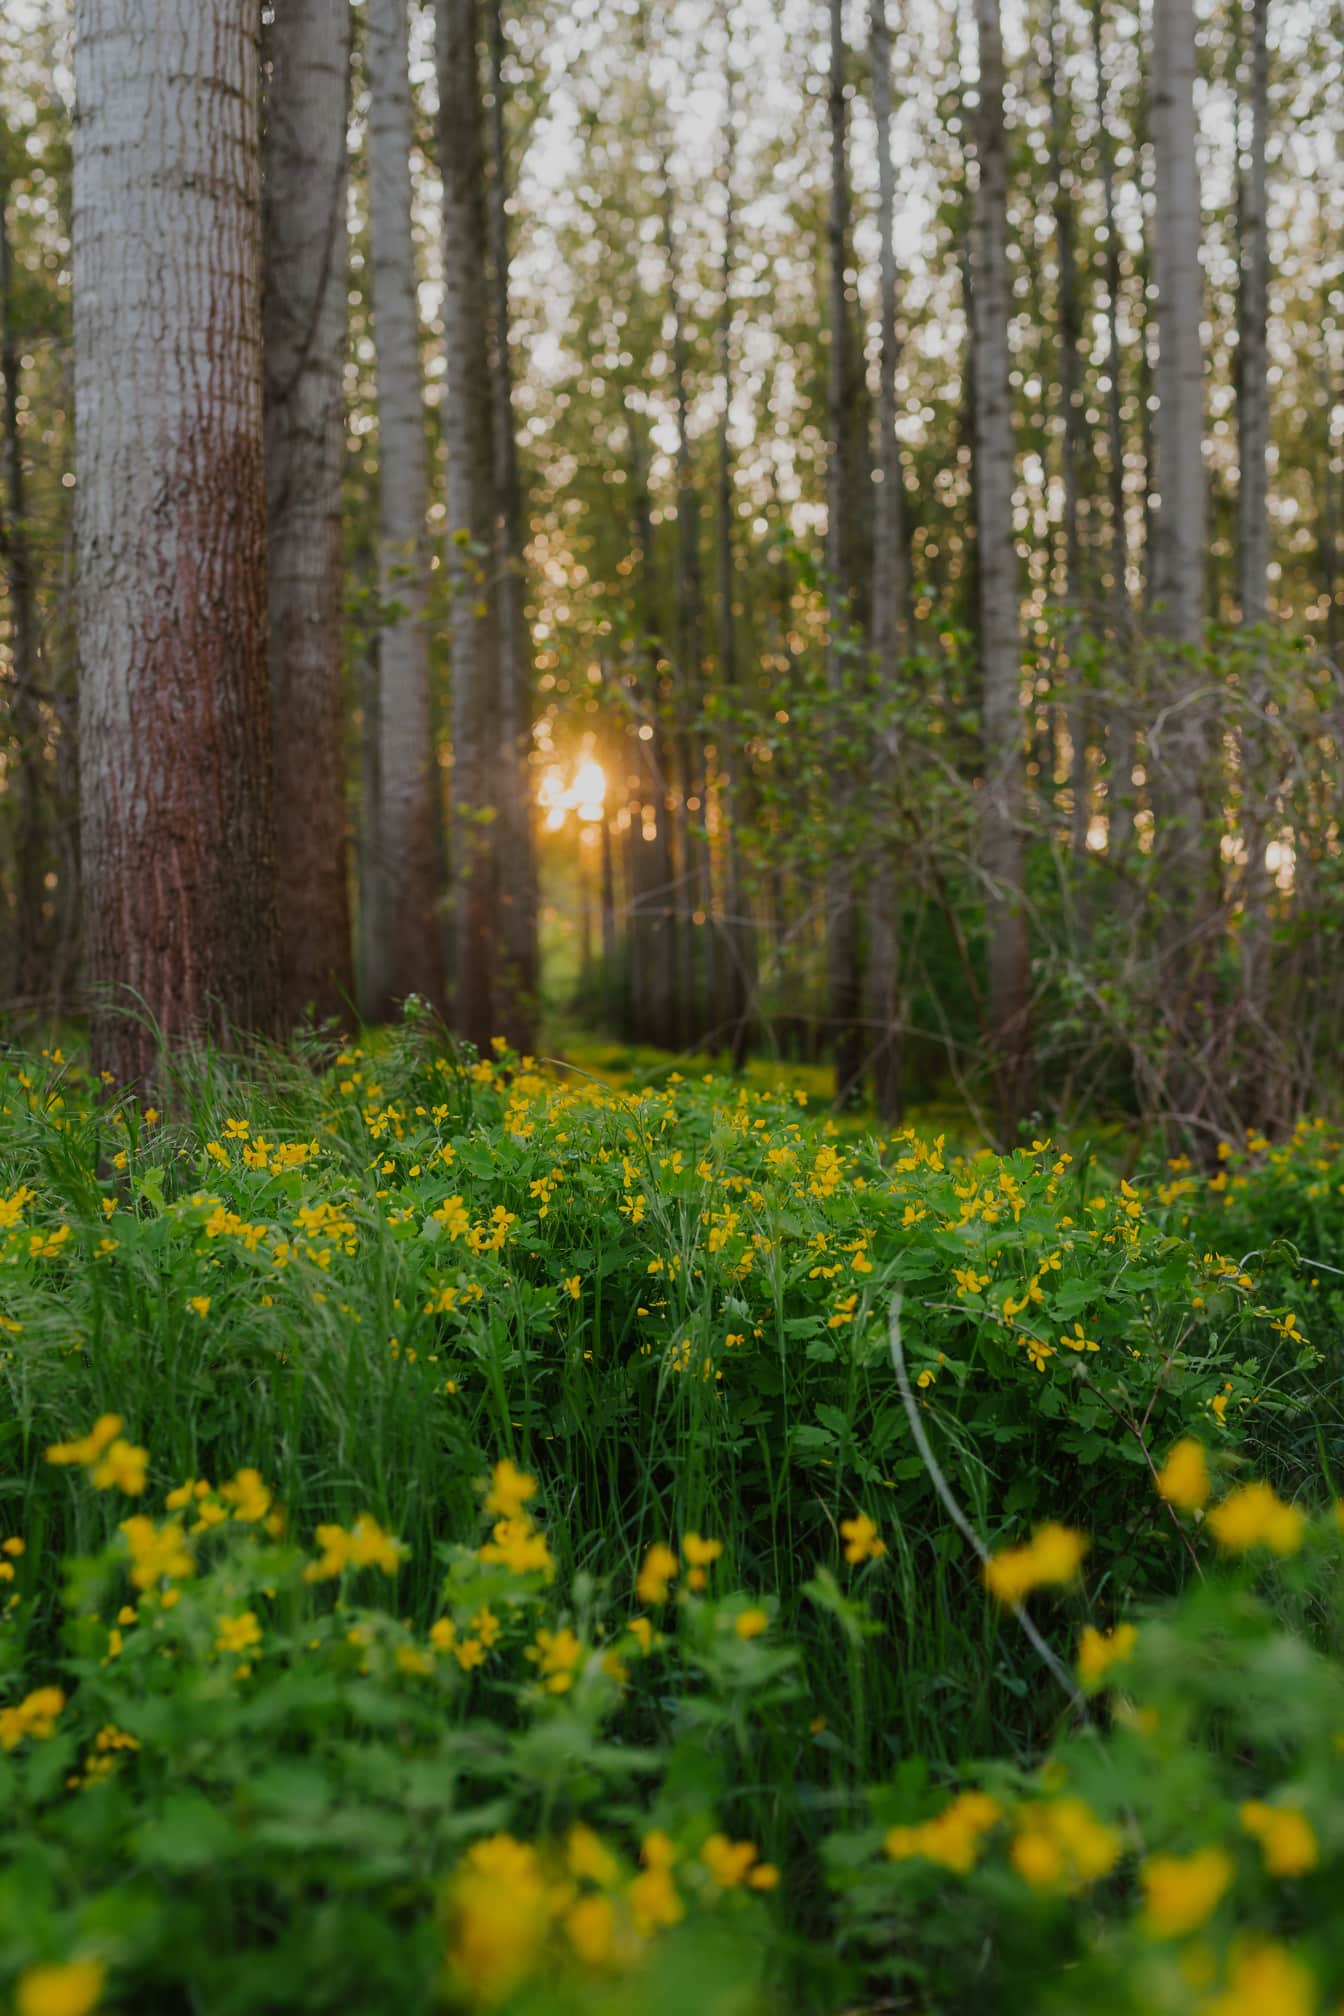 ข่มขืน (Brassica napus) ในป่าป็อปลาร์ในยามพระอาทิตย์ตกดิน